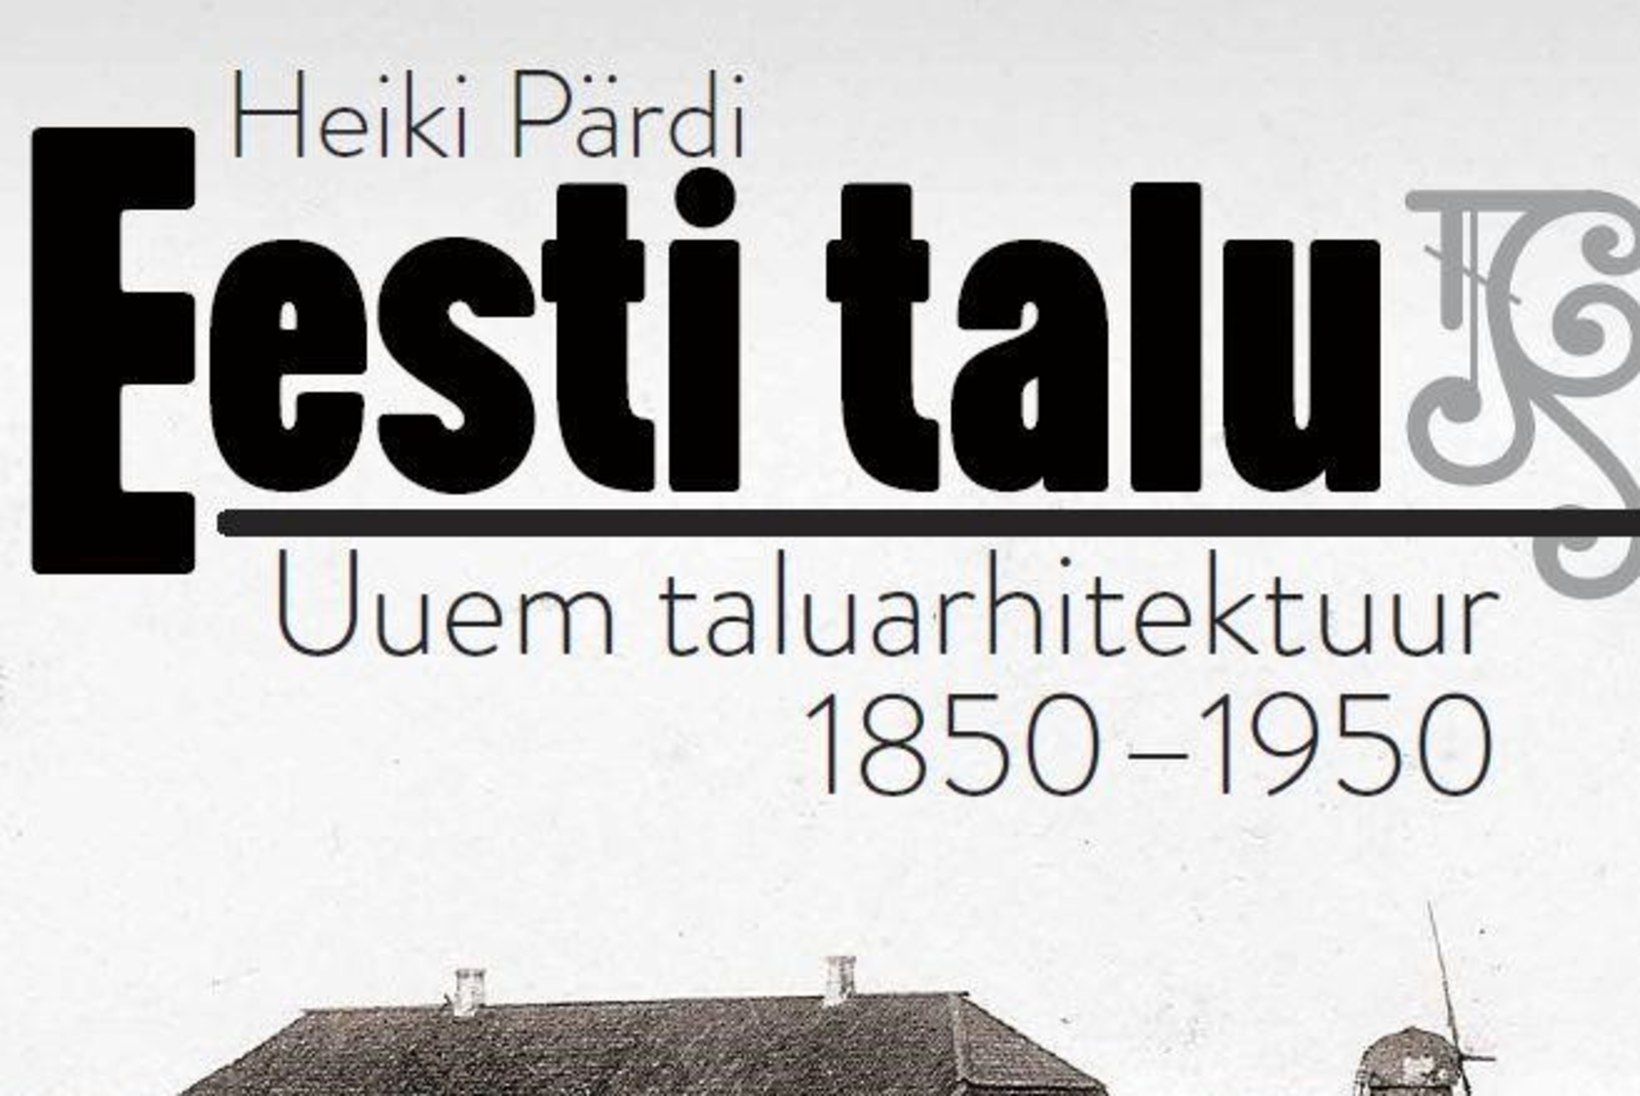 Naistelehe kultuuriuudised: vaata närvikõdi tekitavat seriaali või avasta Eesti taluarhitektuuri